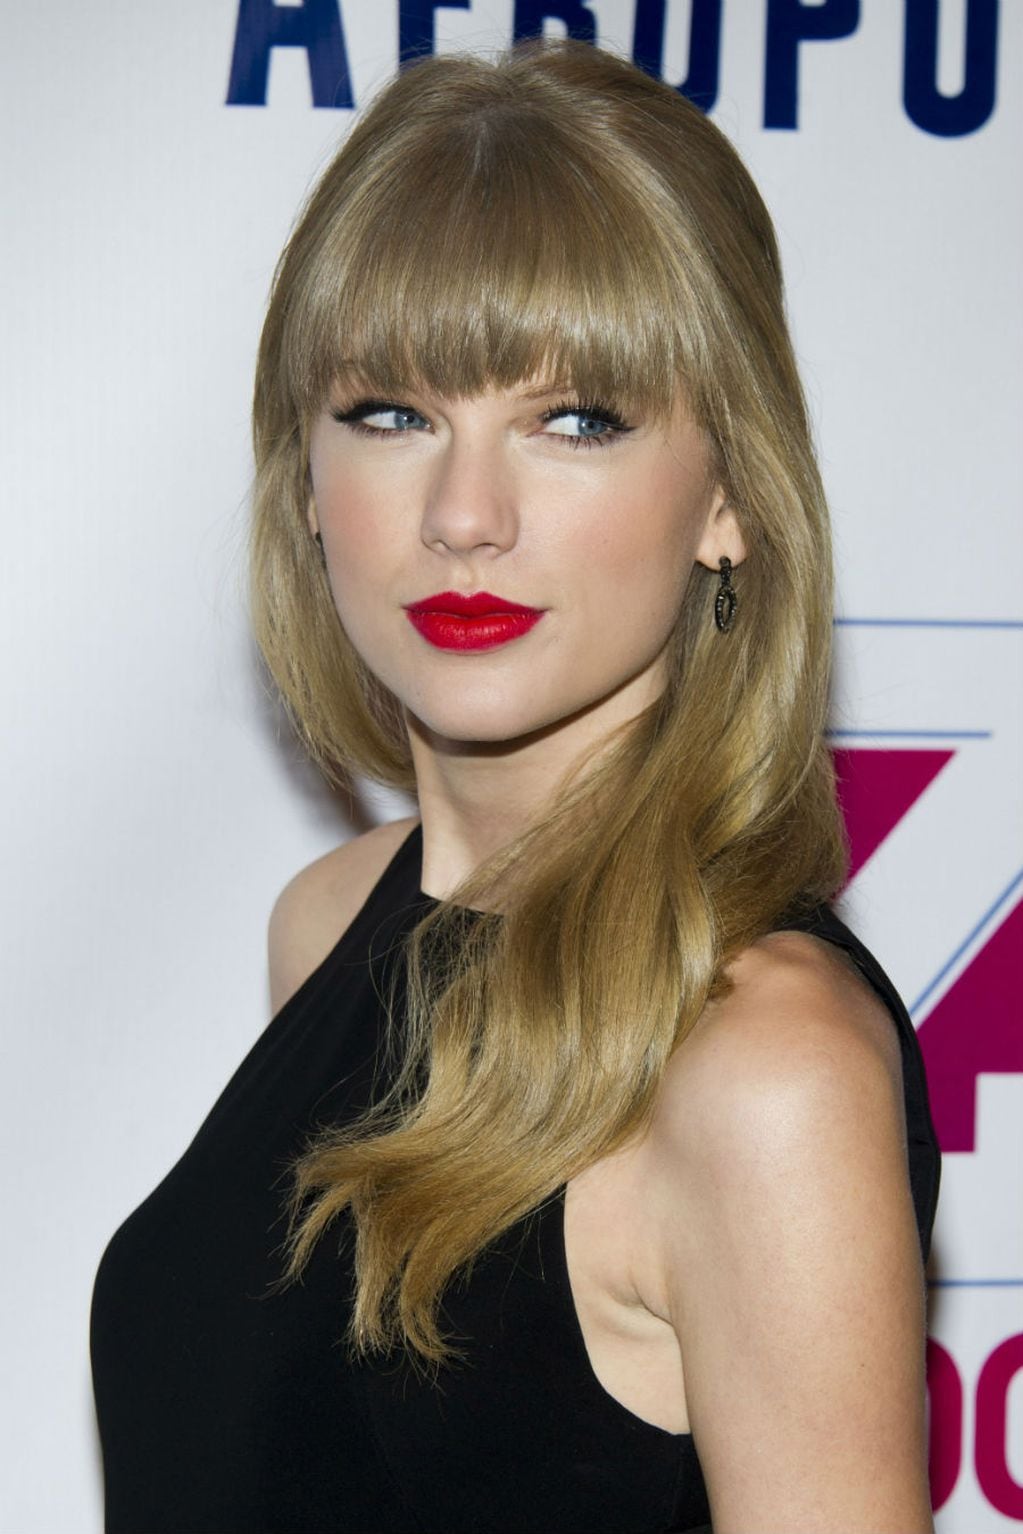 Estas son 13 curiosidades que pocos saben de Taylor Swift.